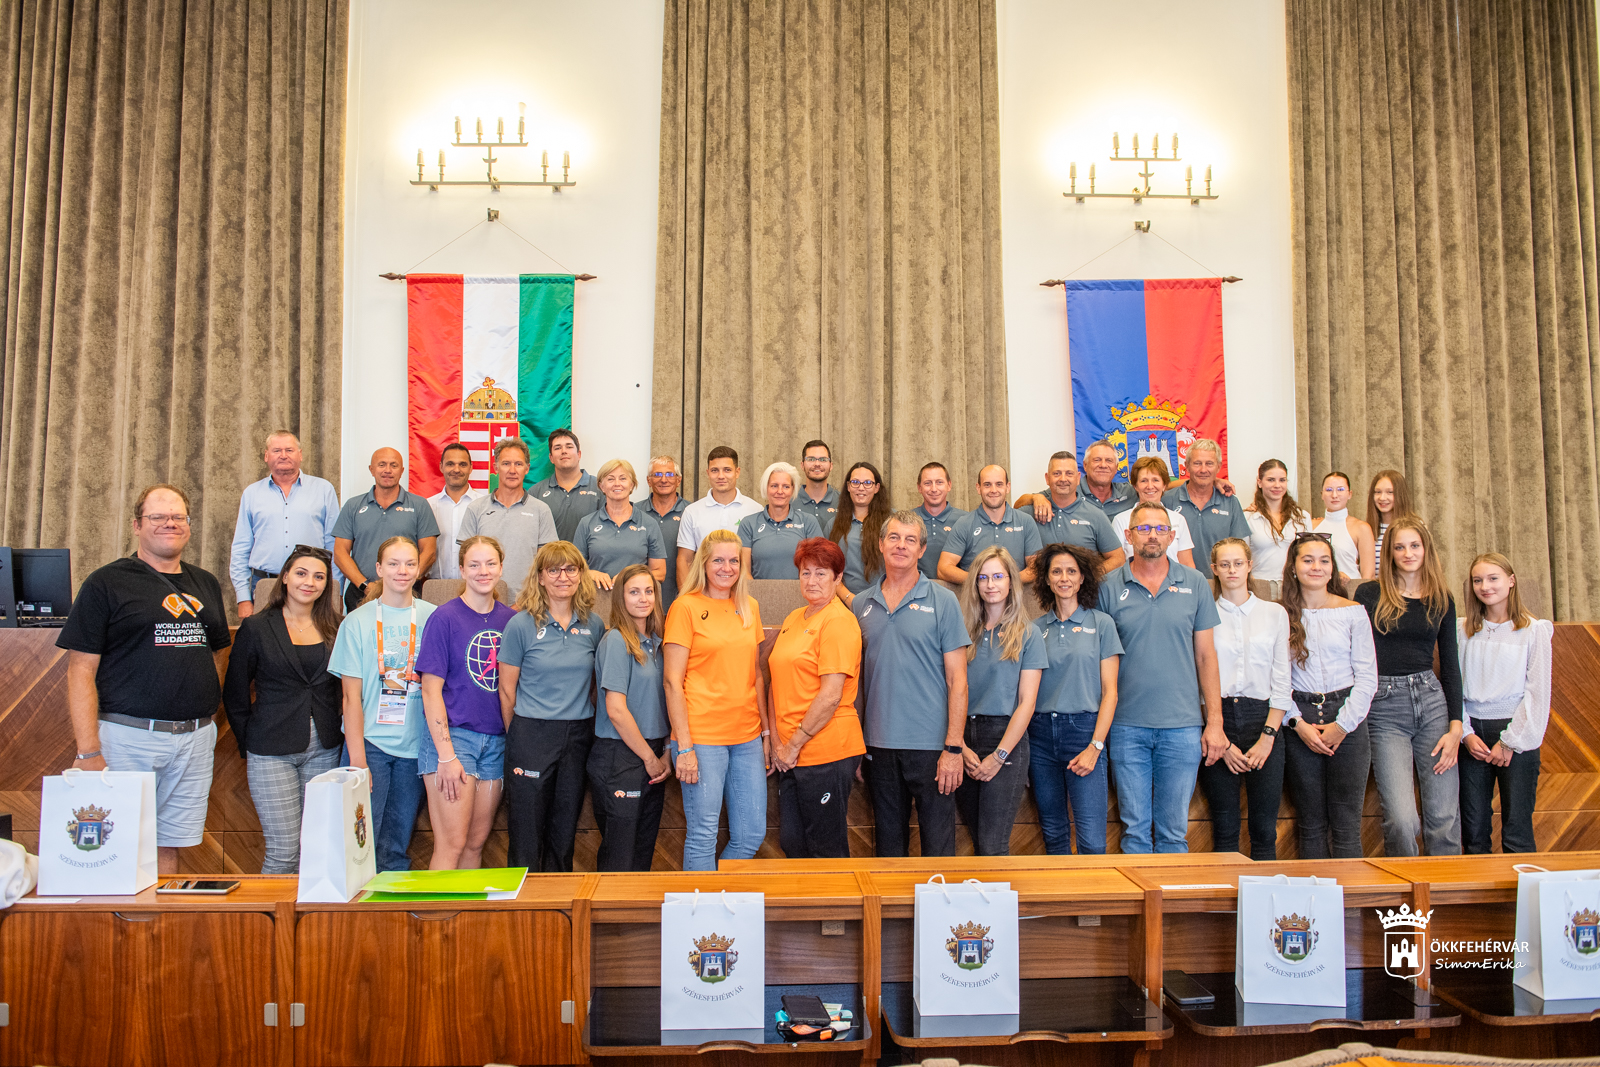 Az Atlétikai Világbajnokság székesfehérvári résztvevőit köszöntötték a Városházán